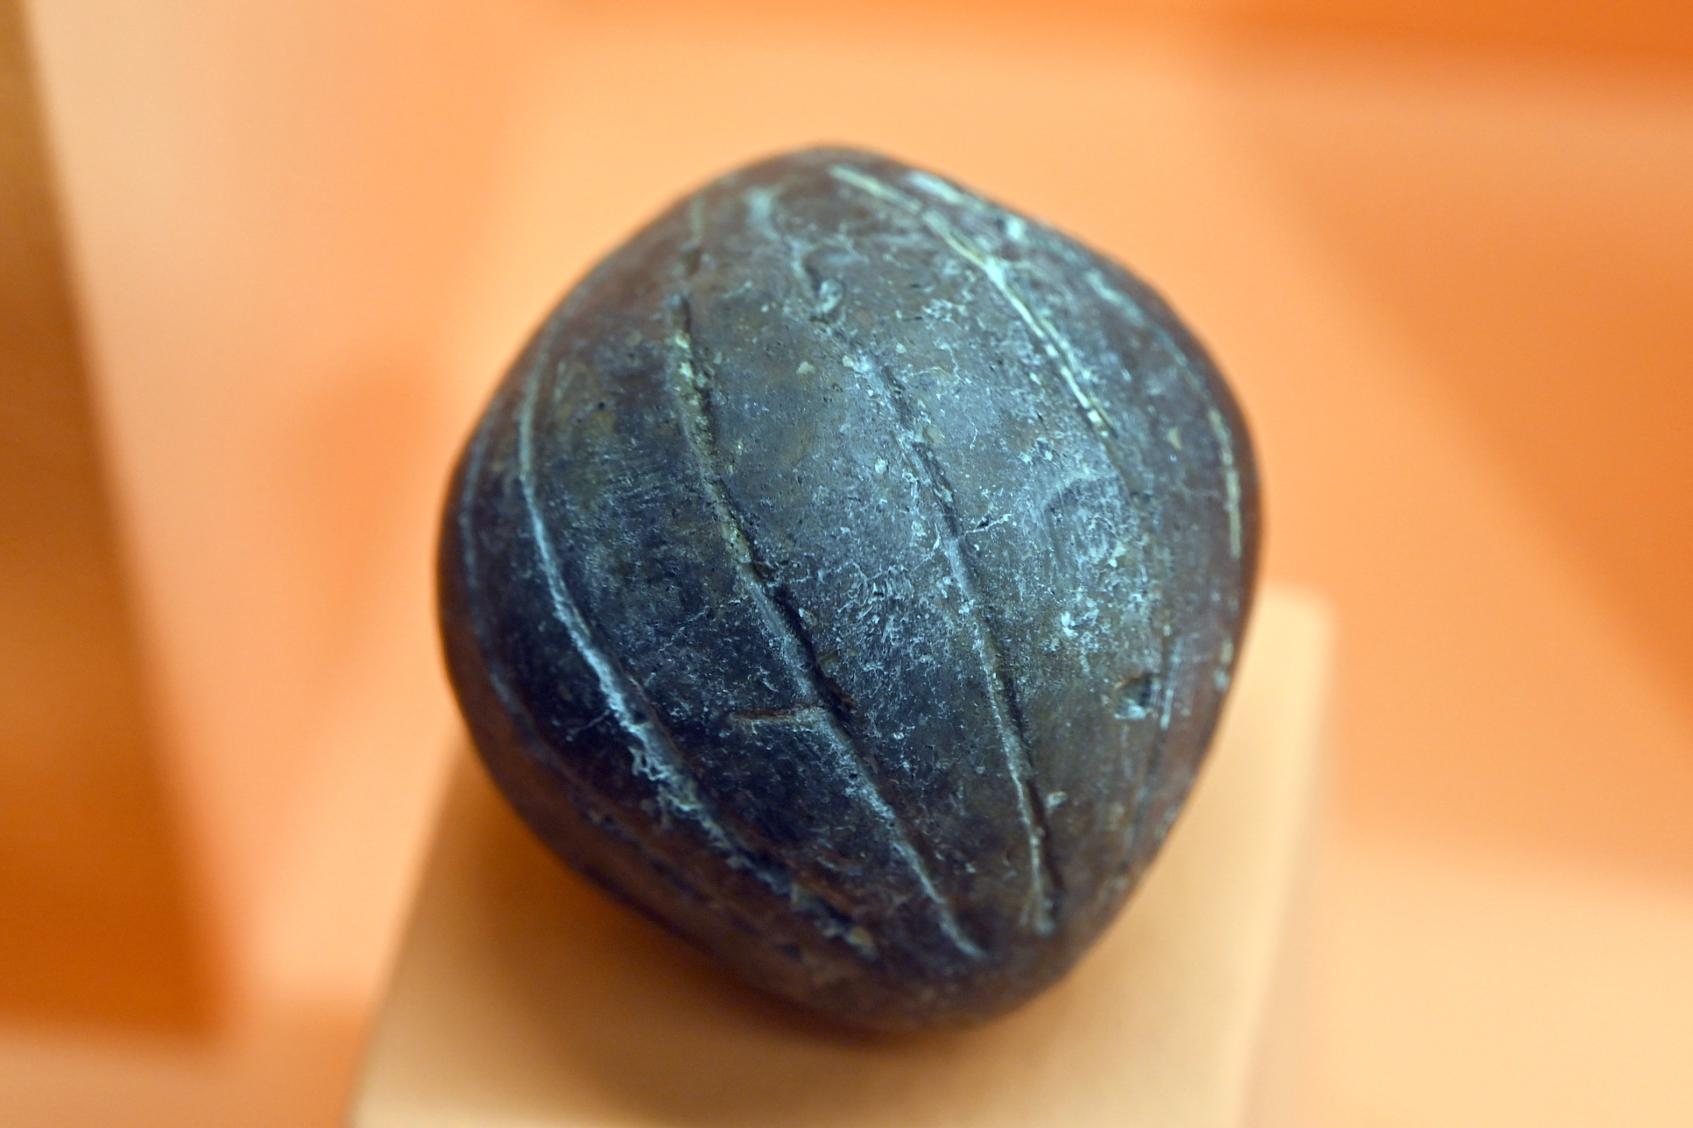 Mit Rillen verzierte kugelige Rassel, Späte (Jüngere) Bronzezeit, 1500 - 700 v. Chr., Bild 1/2